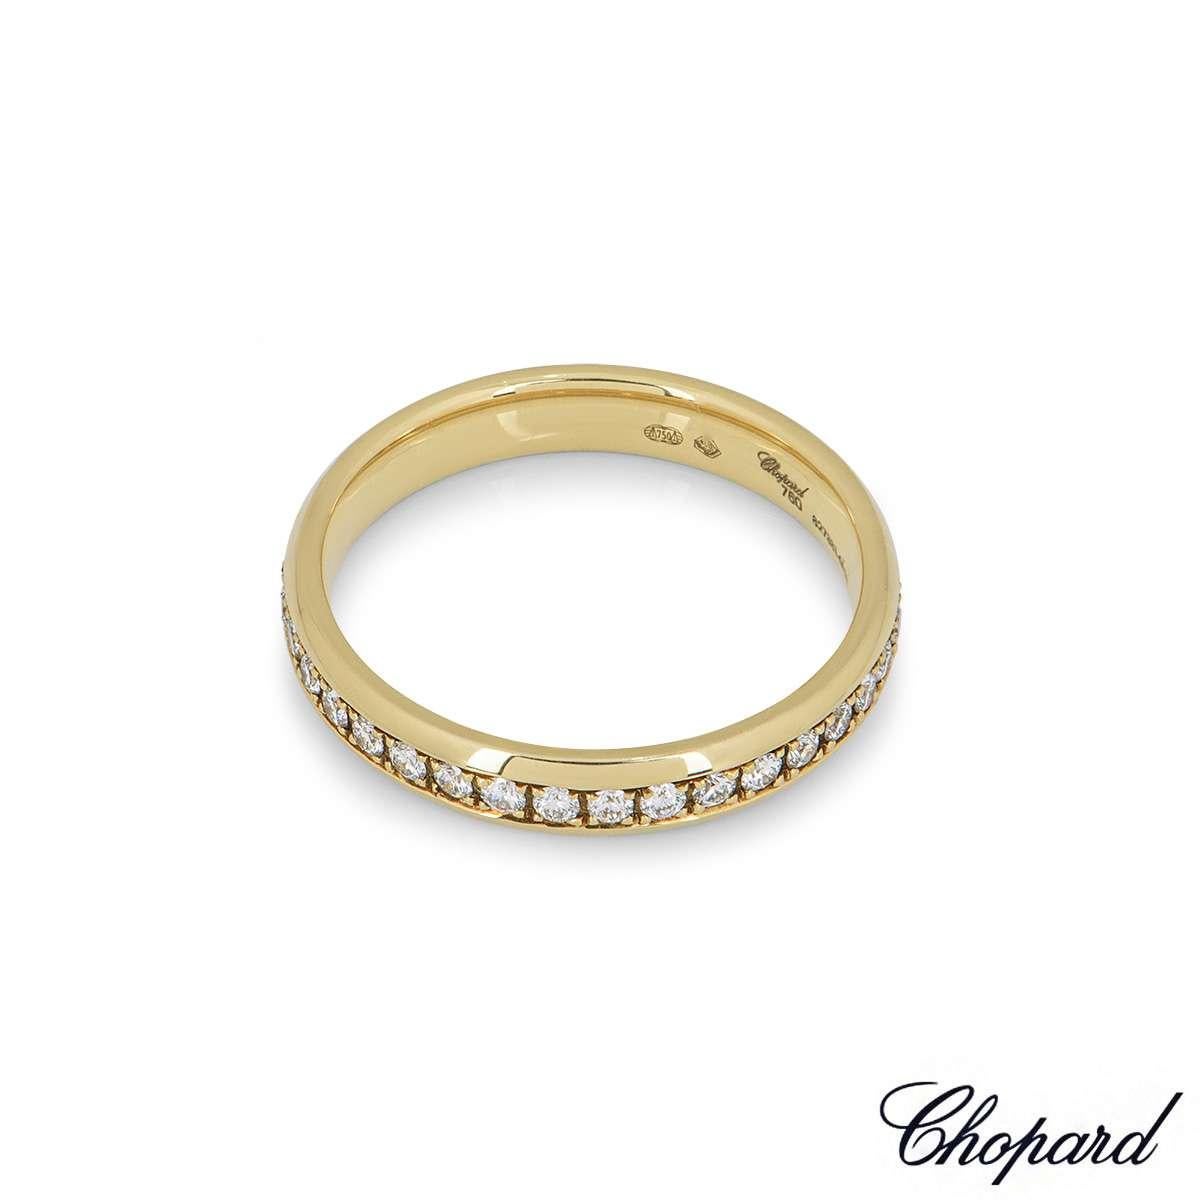 chopard eternity ring